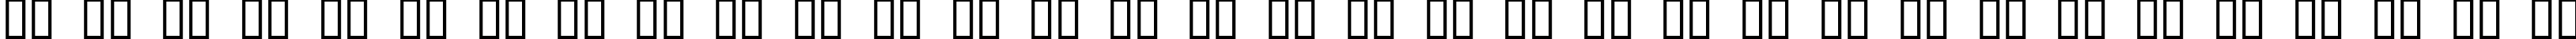 Пример написания русского алфавита шрифтом GroupSex